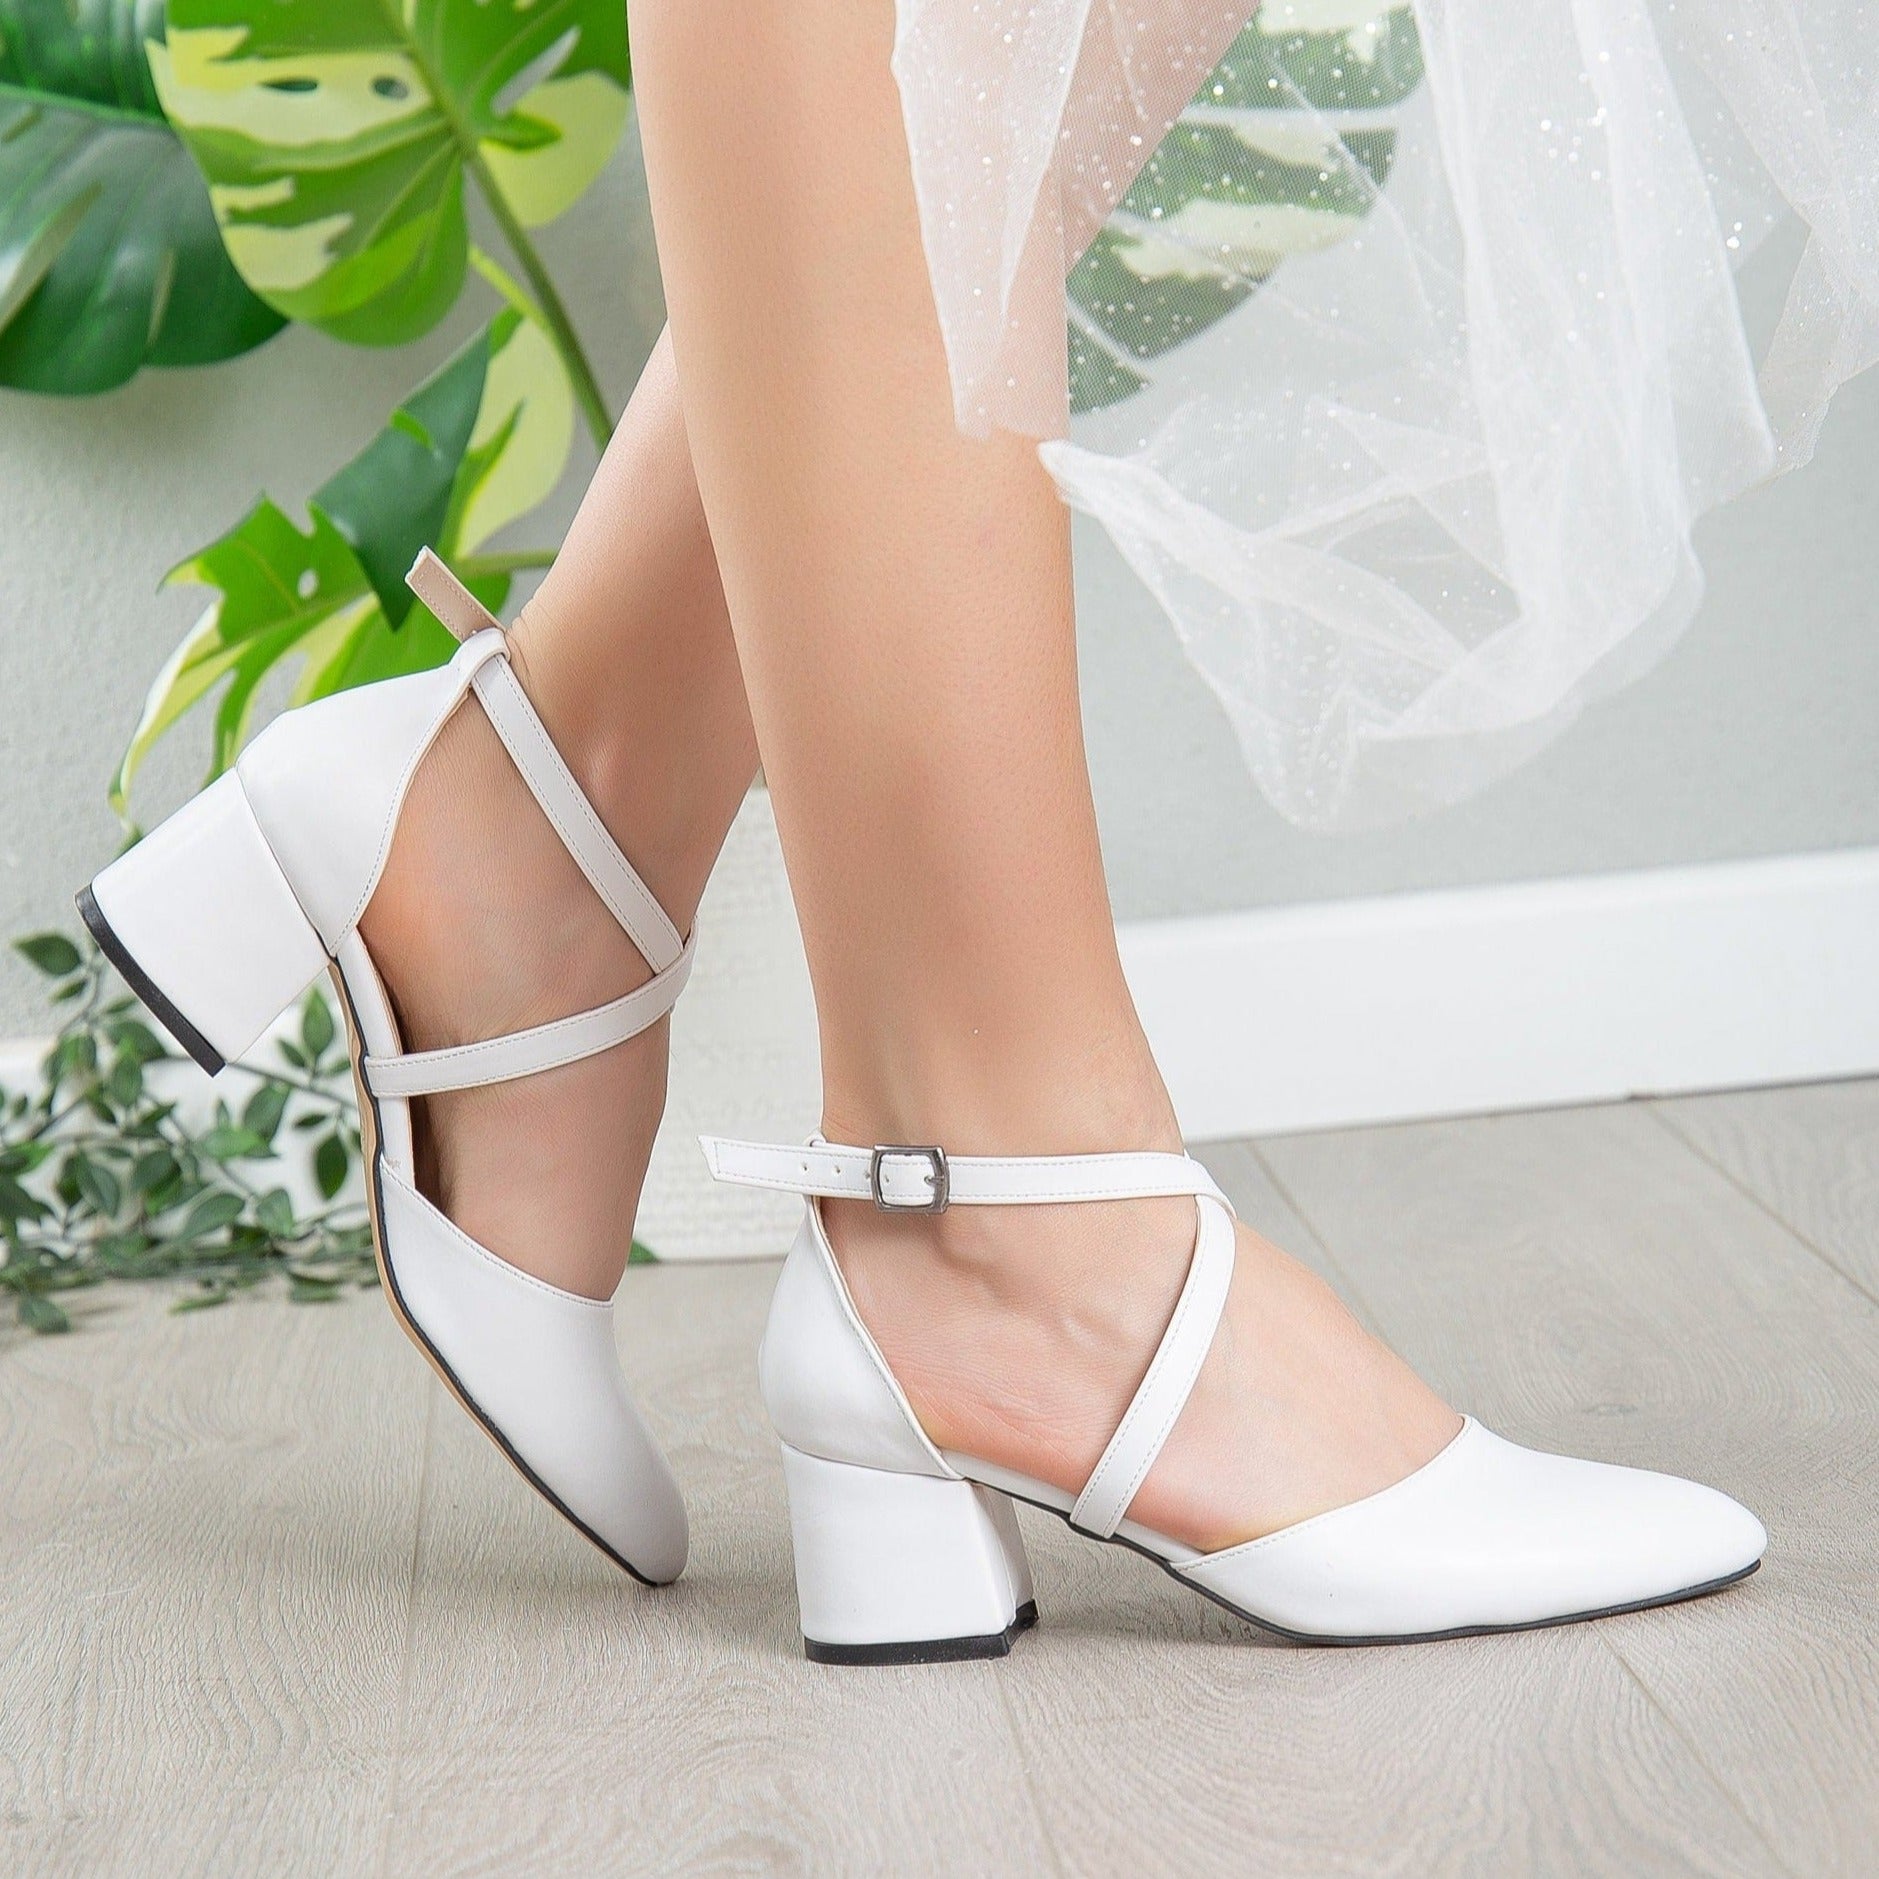 Wedding Low Heels, White Block Heels, Pointed Toe Heels